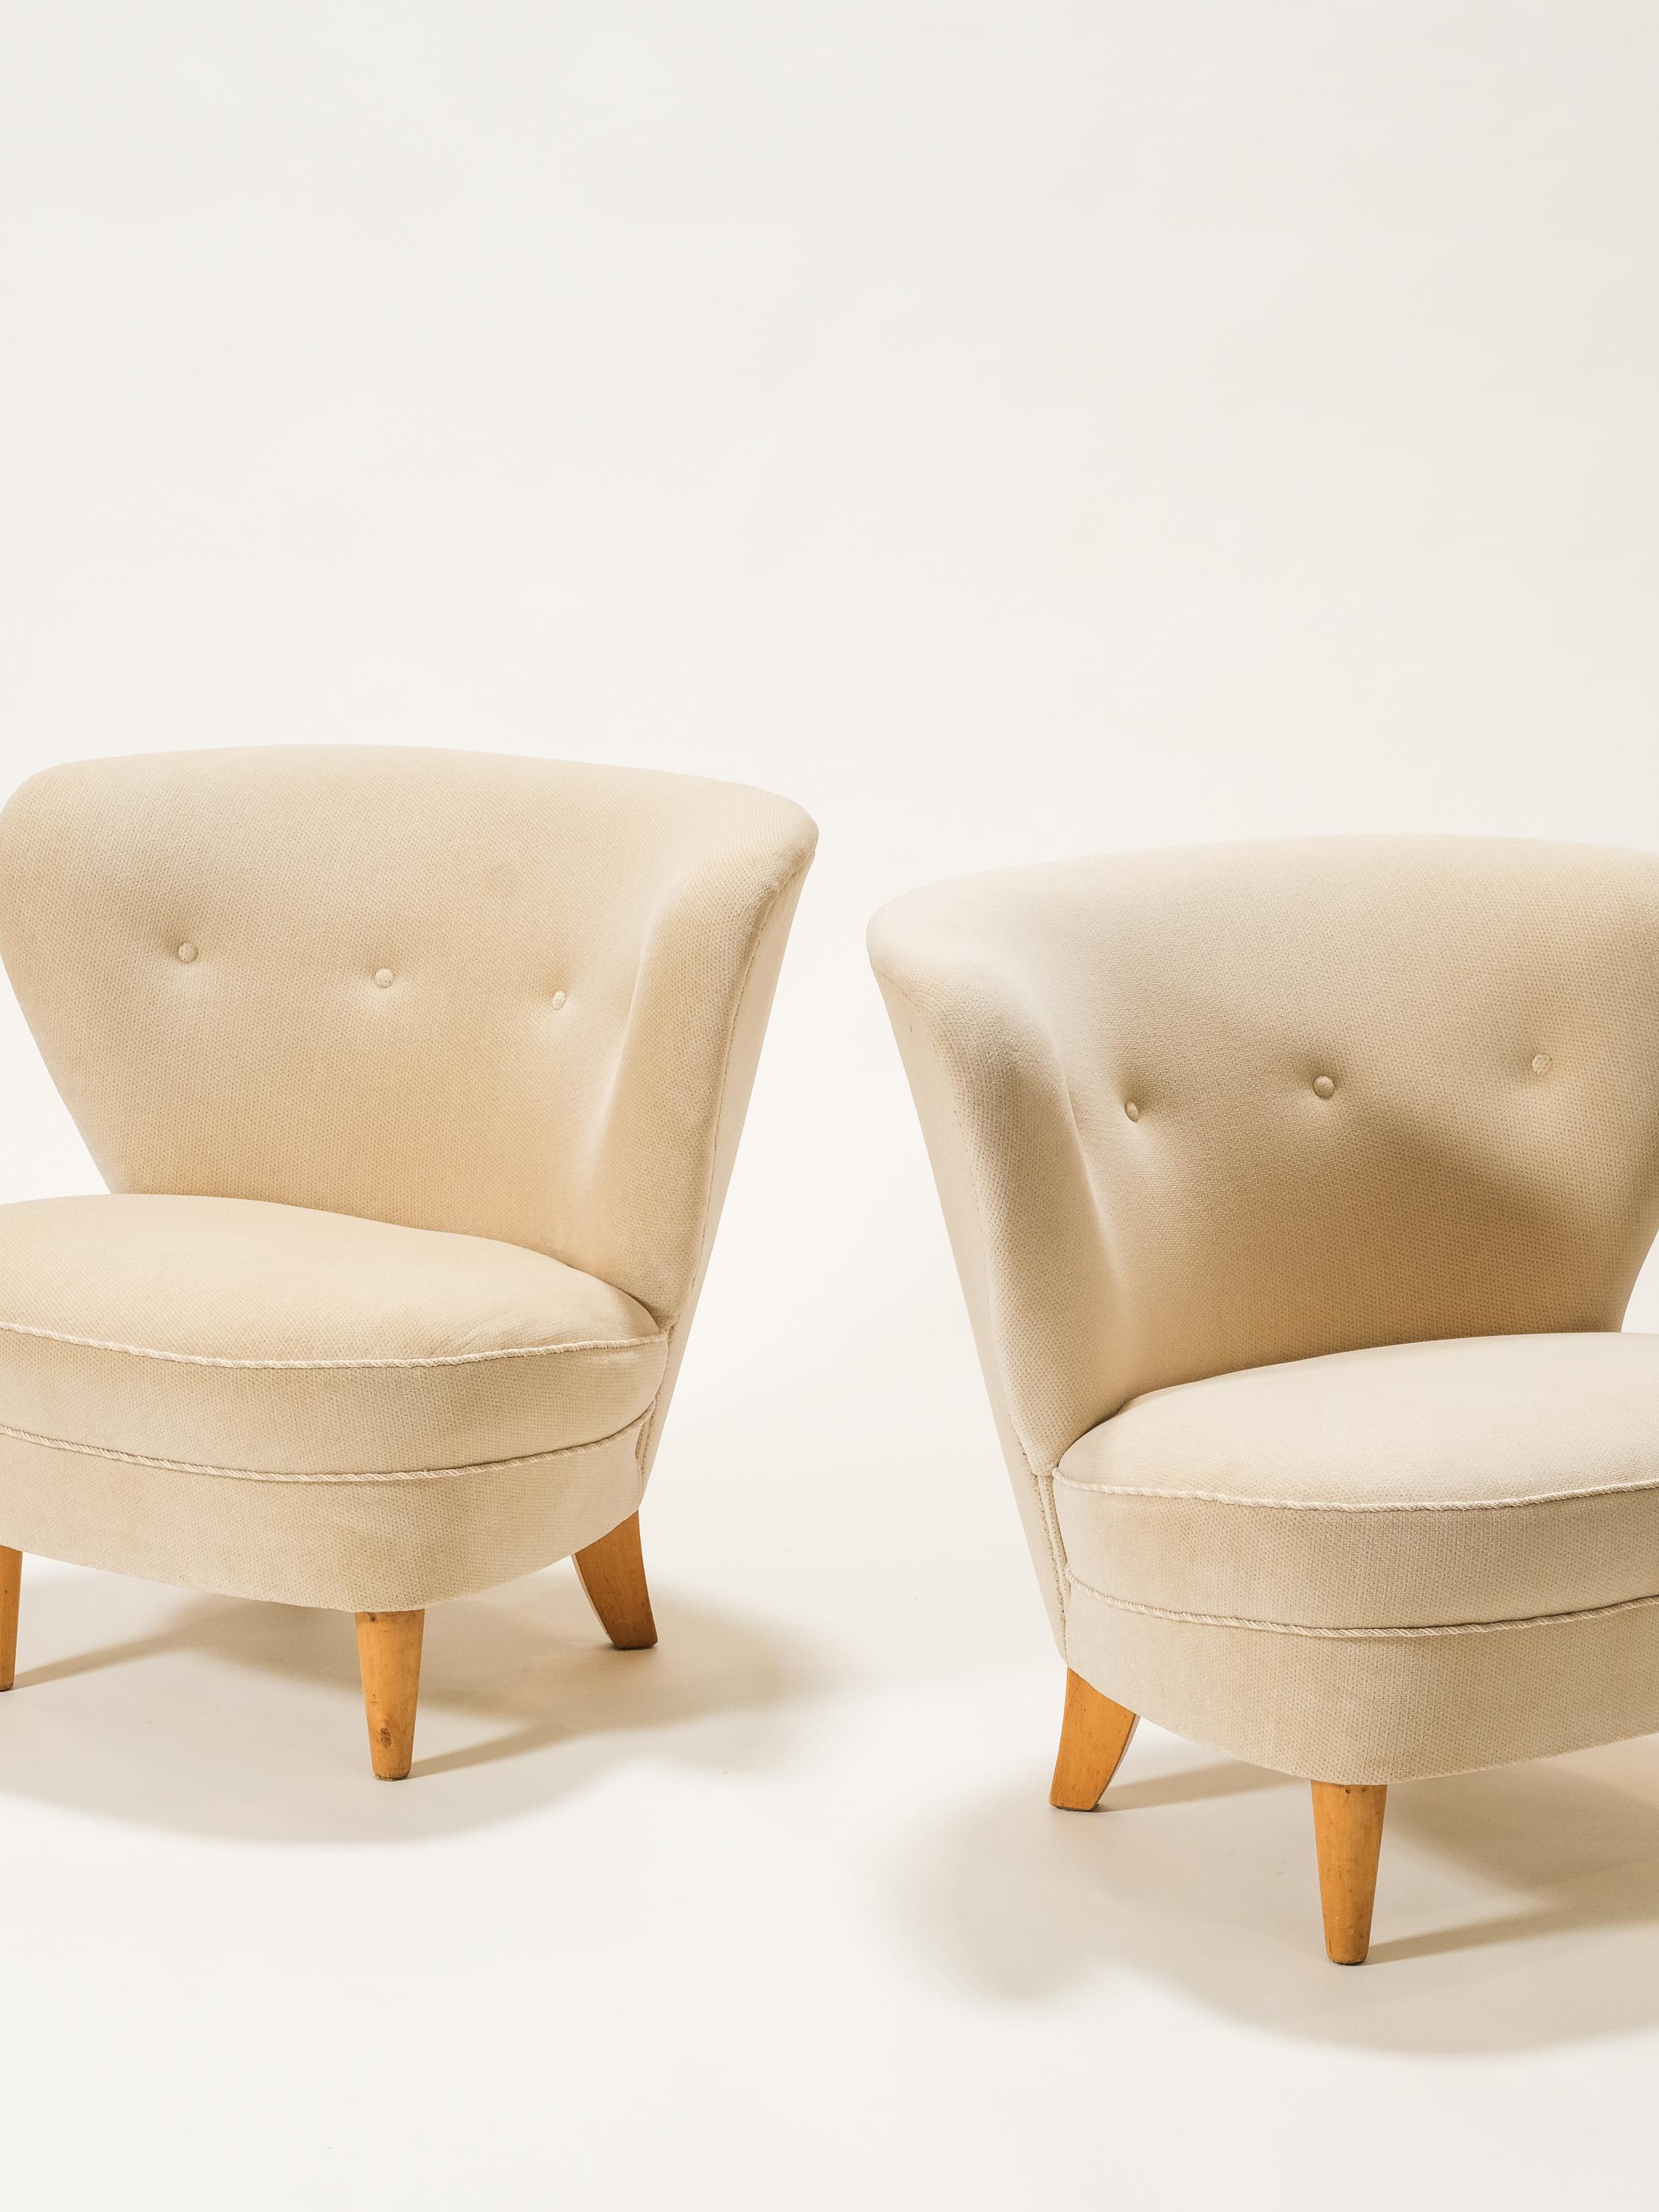 Ein Paar Sessel aus Finnland, 1950er Jahre.